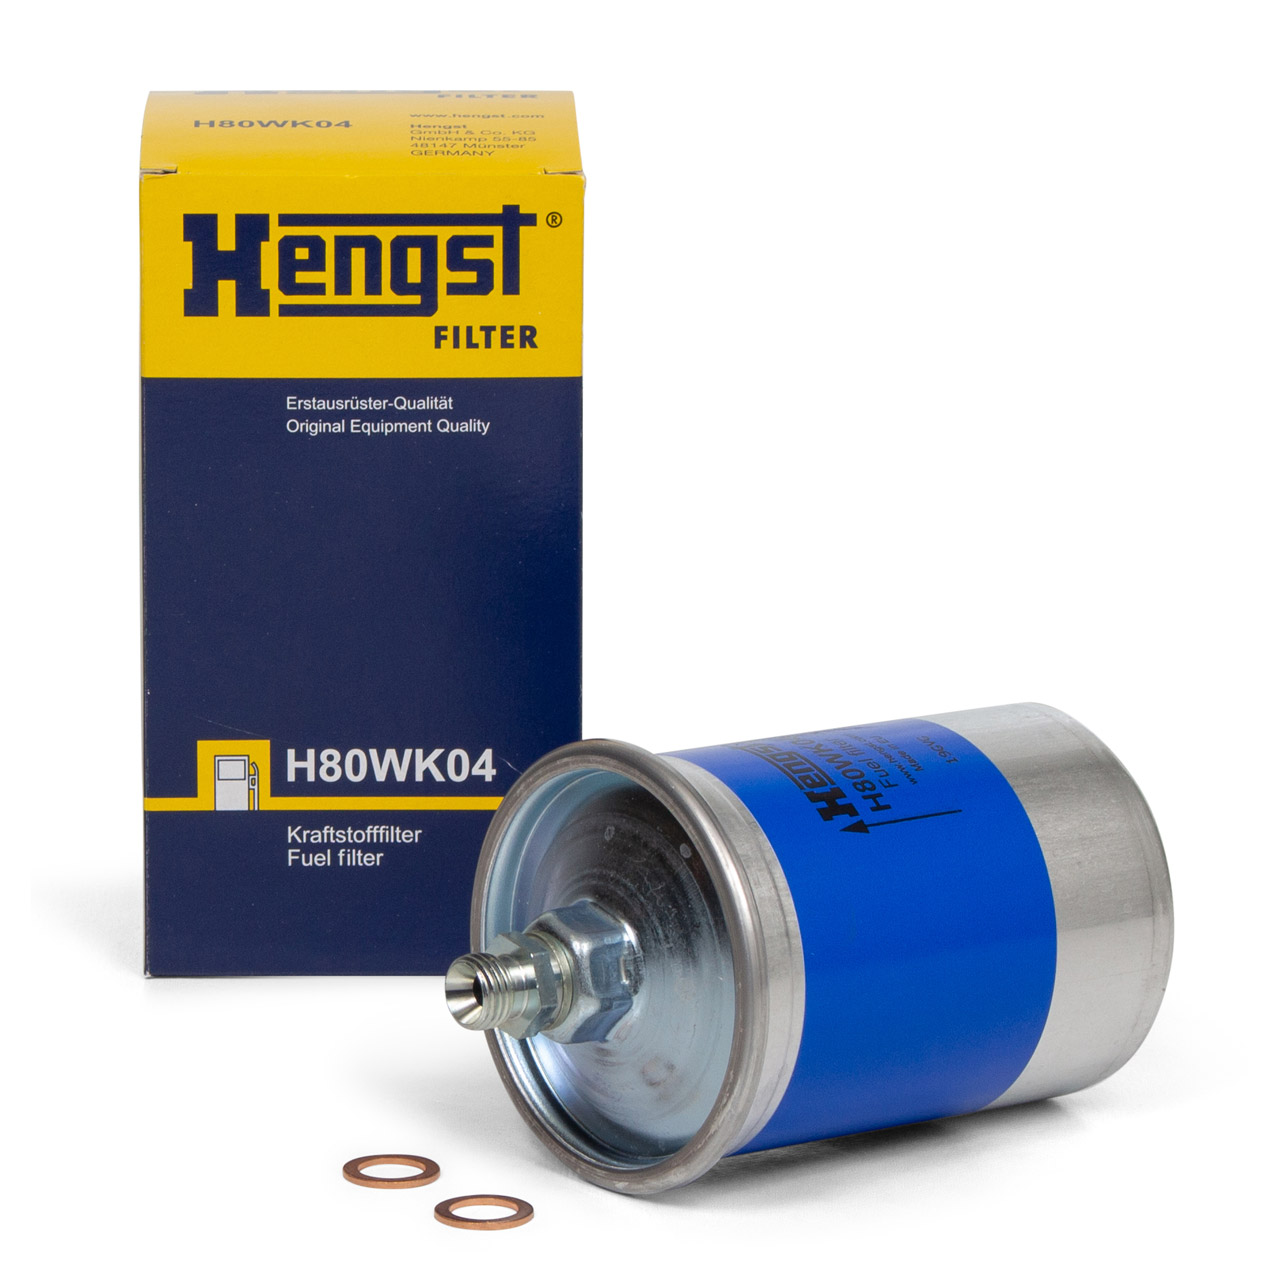 HENGST H80WK04 Kraftstofffilter für MERCEDES /8 W114 190 W201 W202 W124 W116